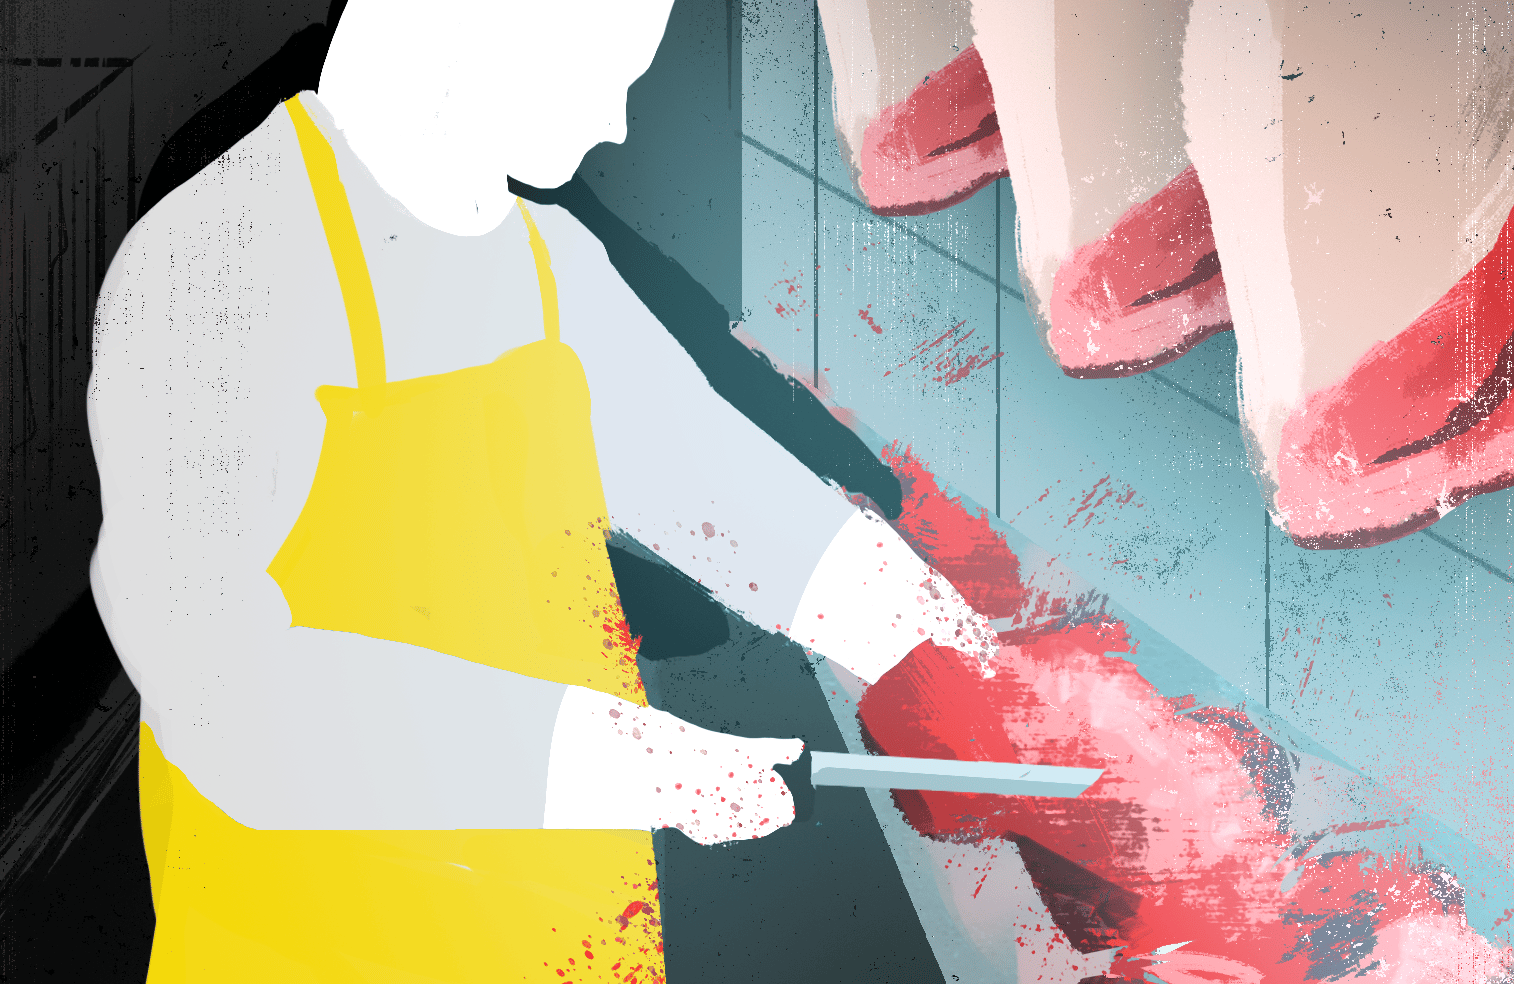 Osoba w roboczym fartuchu, z gołą głową i rękoma, obrabia krwawe kawałki mięsa na taśmie, nad nią wiszą wielkie płaty mięsa